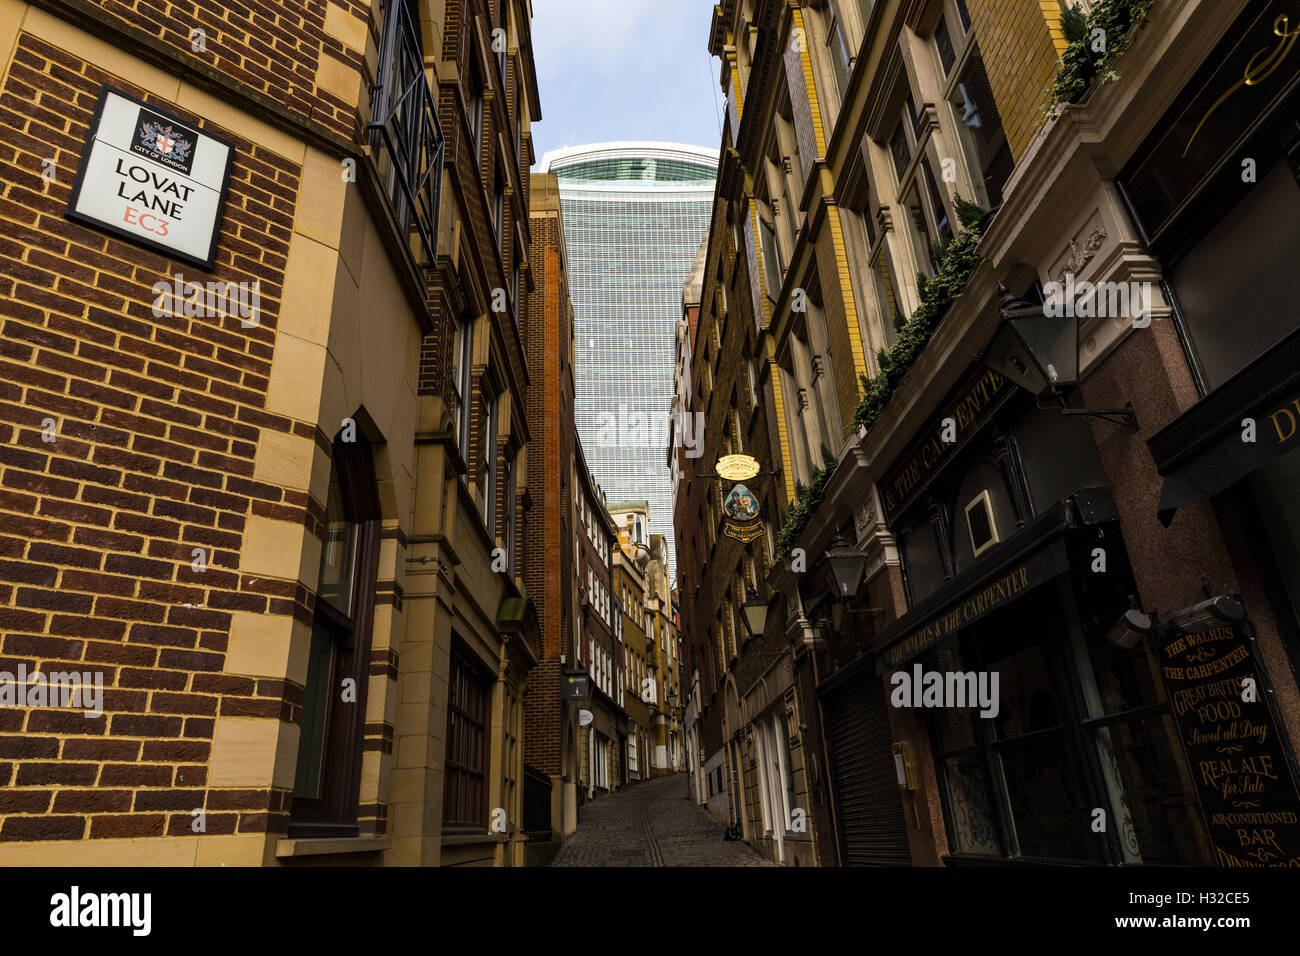 20 Fenchurch Street (Walkie-Talkie) von Lovat Lane, London, England, Vereinigtes Königreich Stockfoto